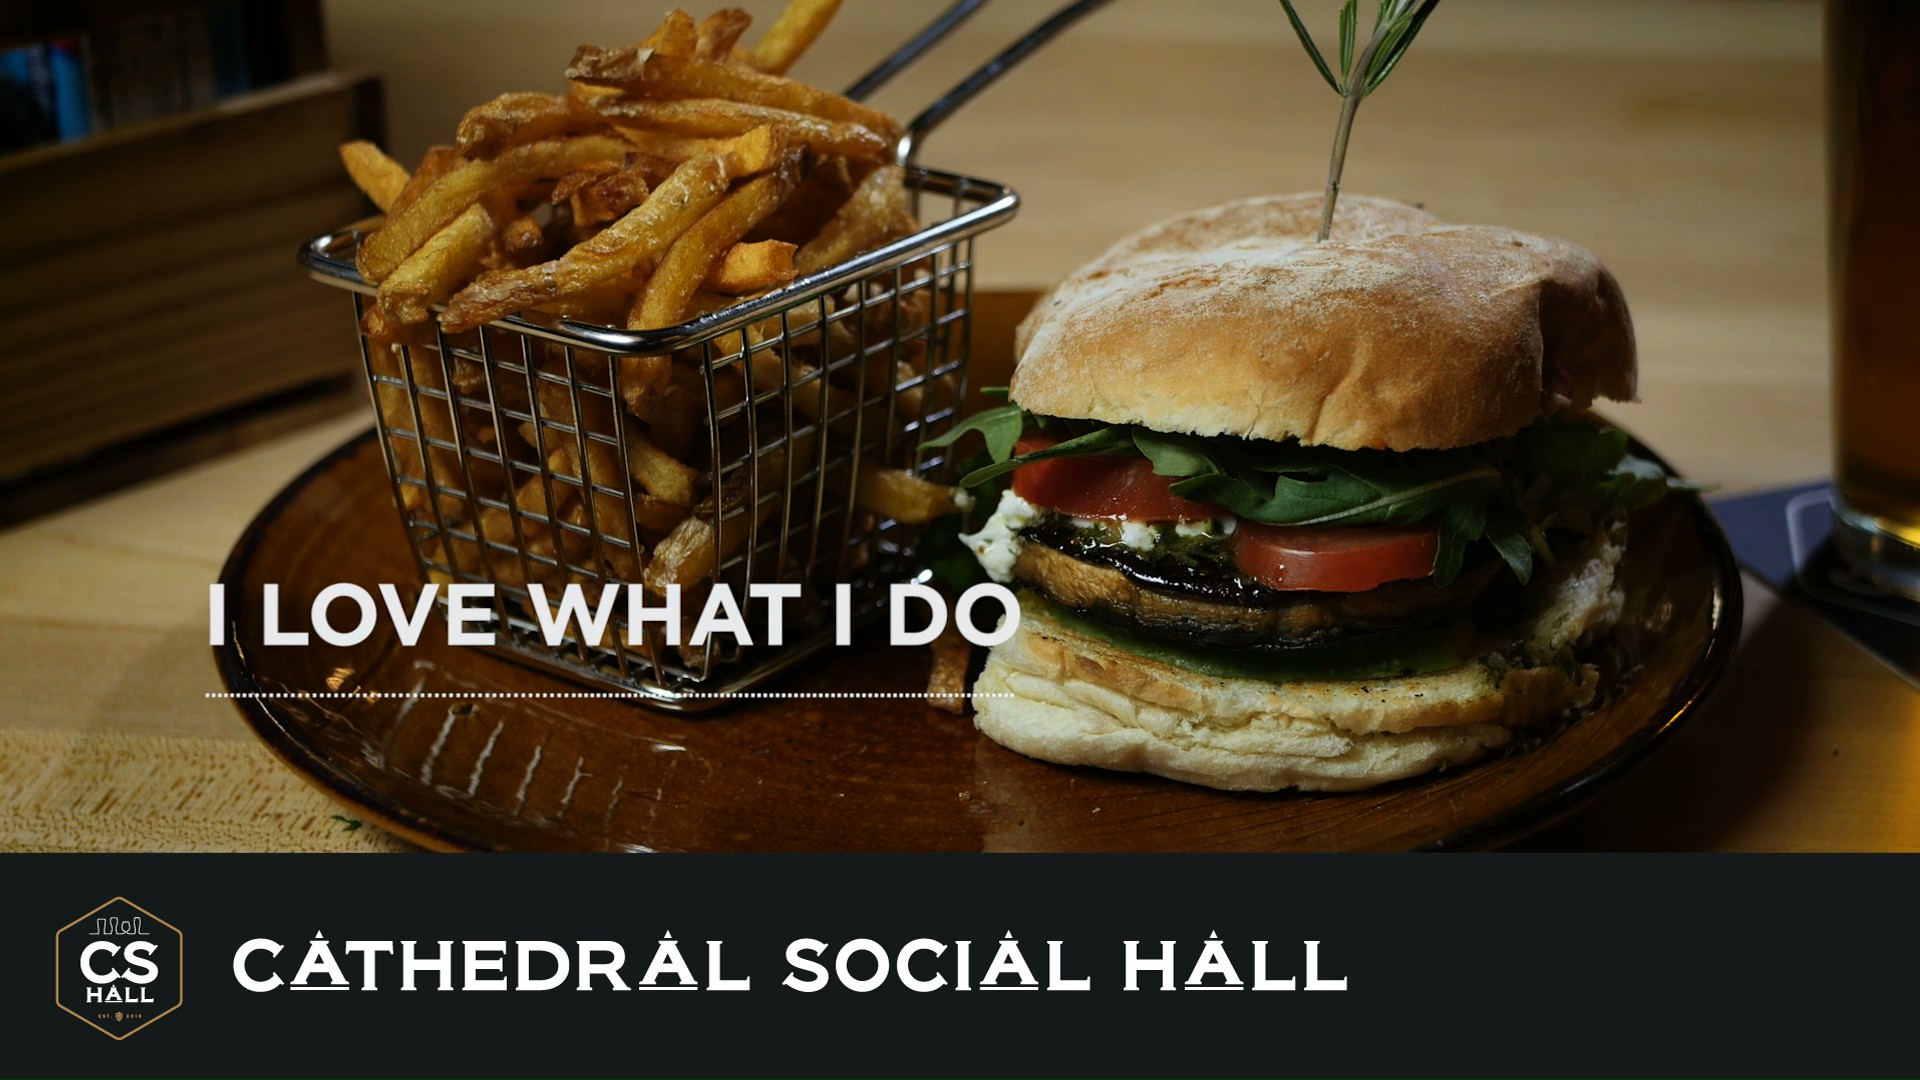 Cathedral Social Hall, Social, Cathedral Social Hall - Team - Zach, Portfolio Image, I Love What I Do